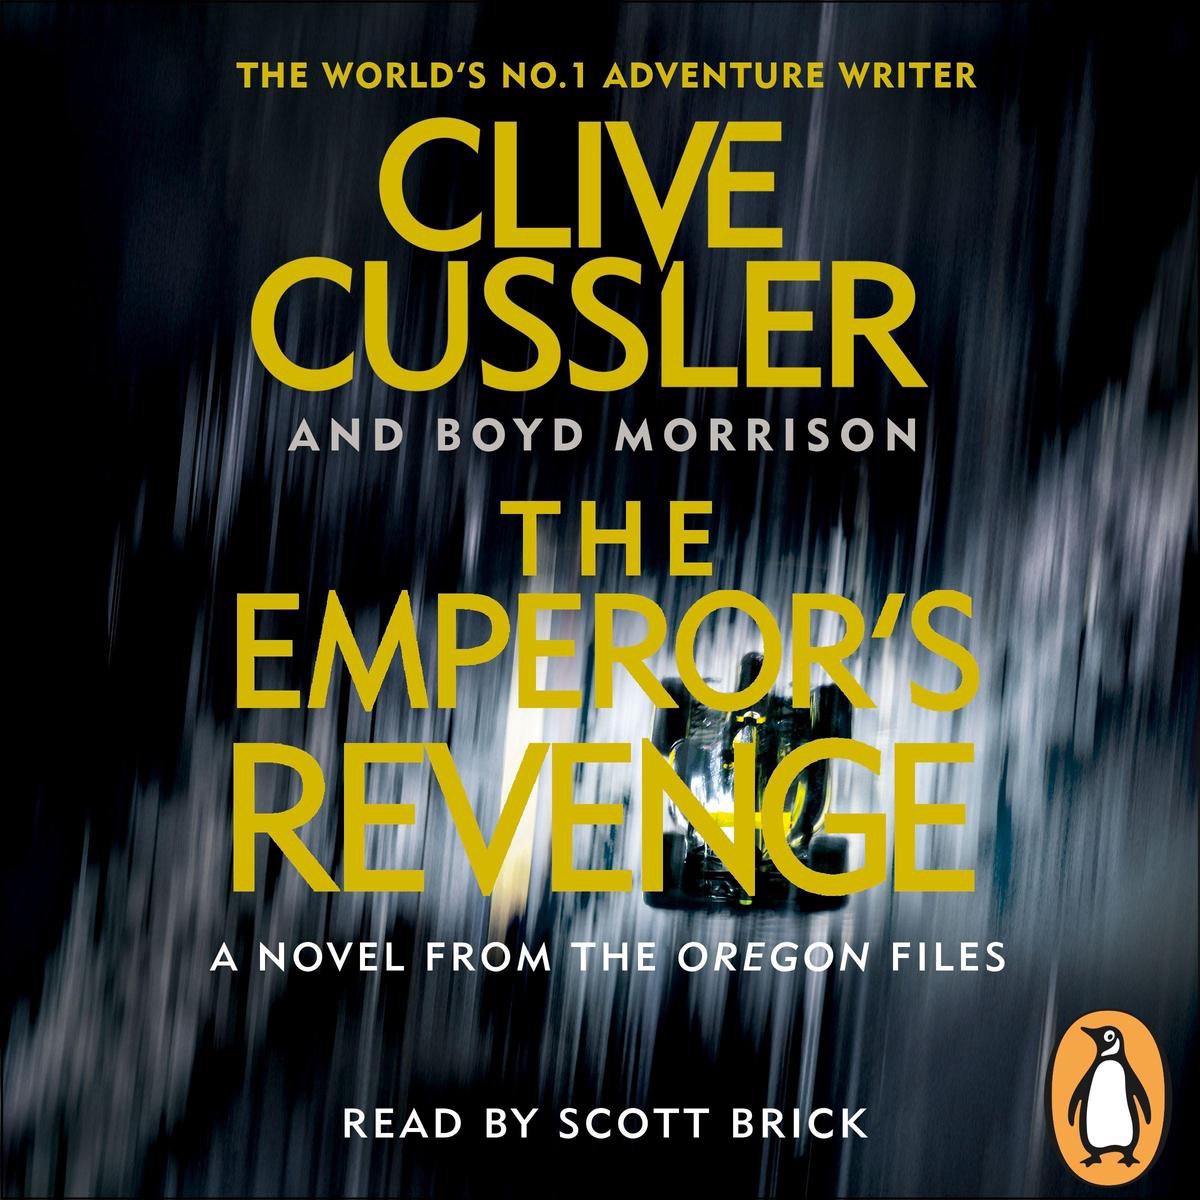 The Emperor's Revenge - Clive Cussler